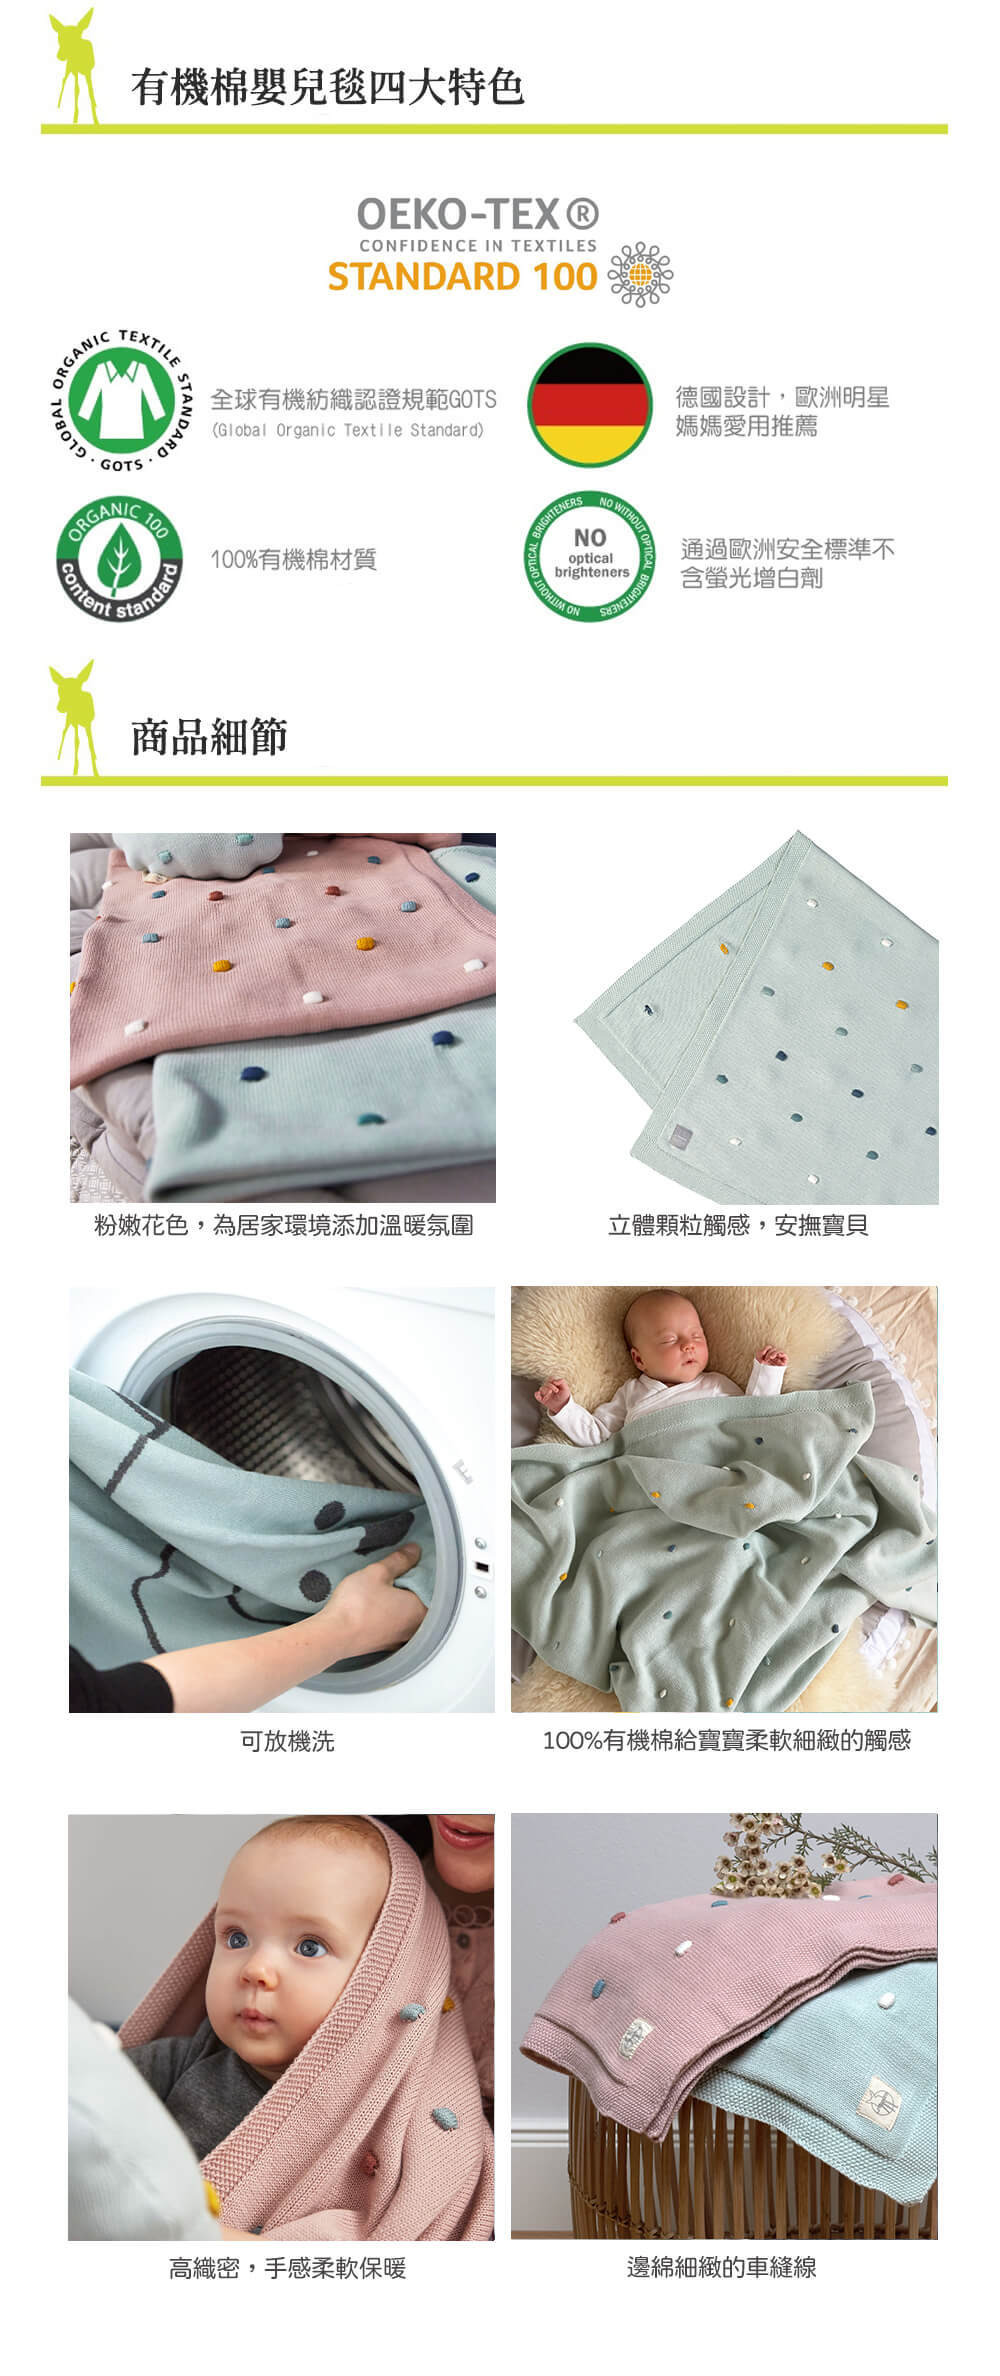 LASSIG來自德國，有機棉嬰兒毯均經GOTS認證，真正100%有機棉。安全無毒，質地親膚柔保暖，讓寶寶用起來舒適又安全，可當秋冬毯或日常遊戲毯。